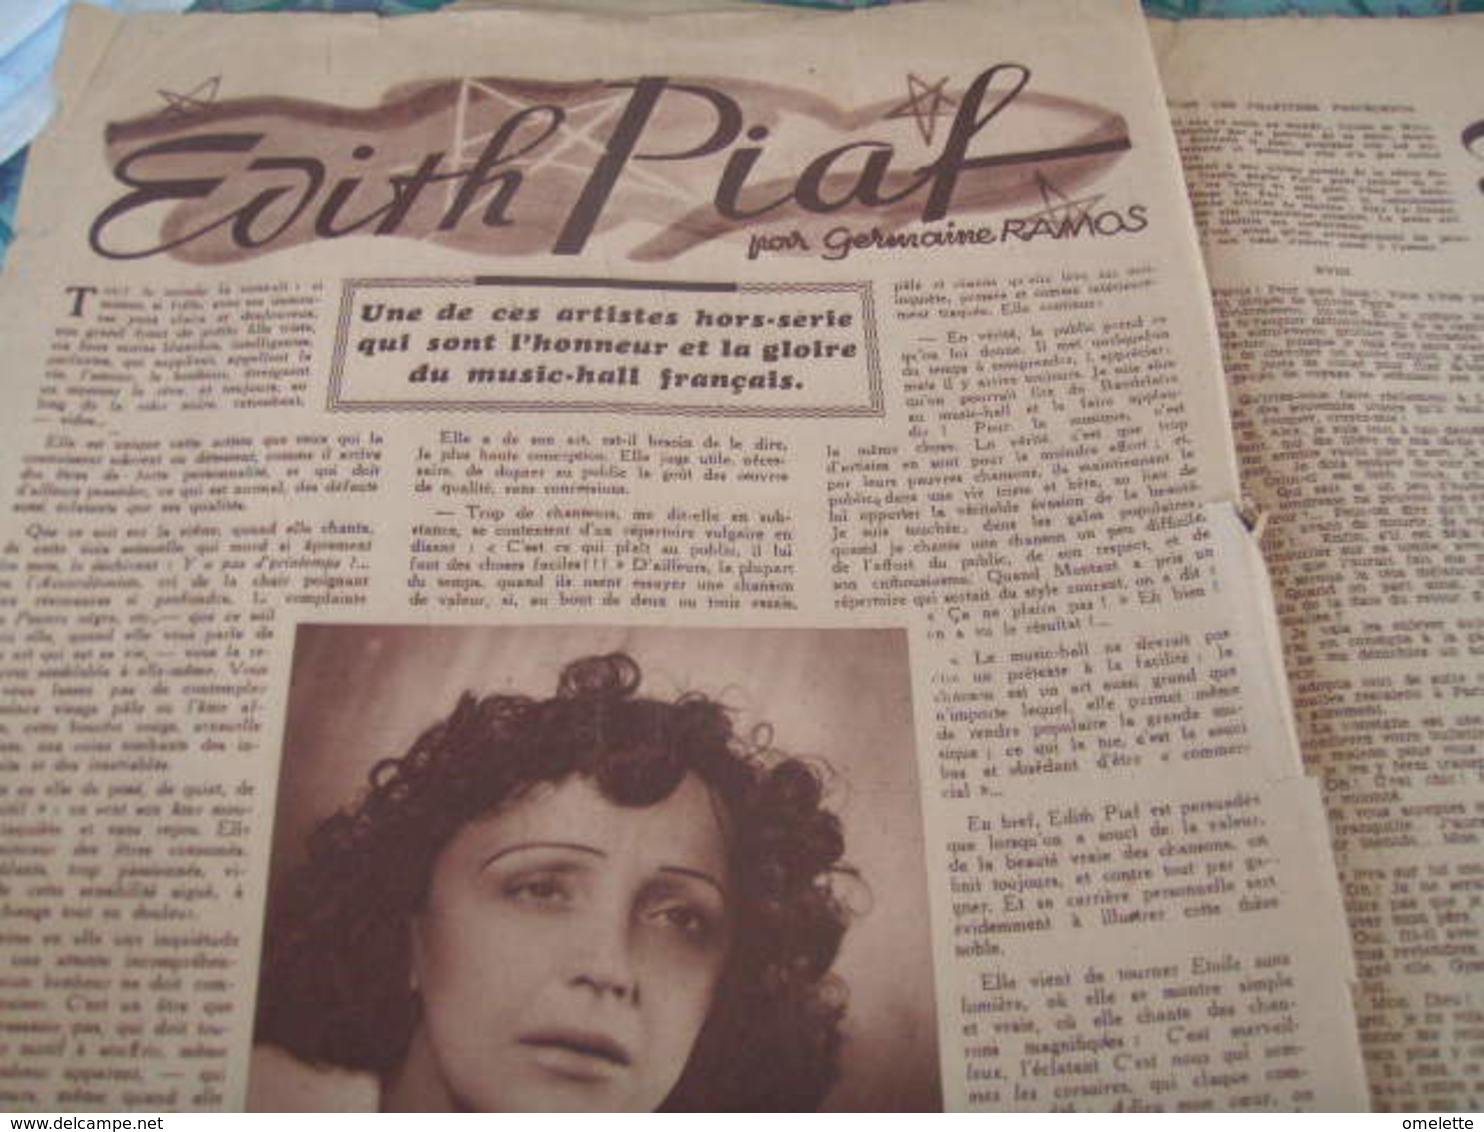 EDITH PIAF - 1900 - 1949